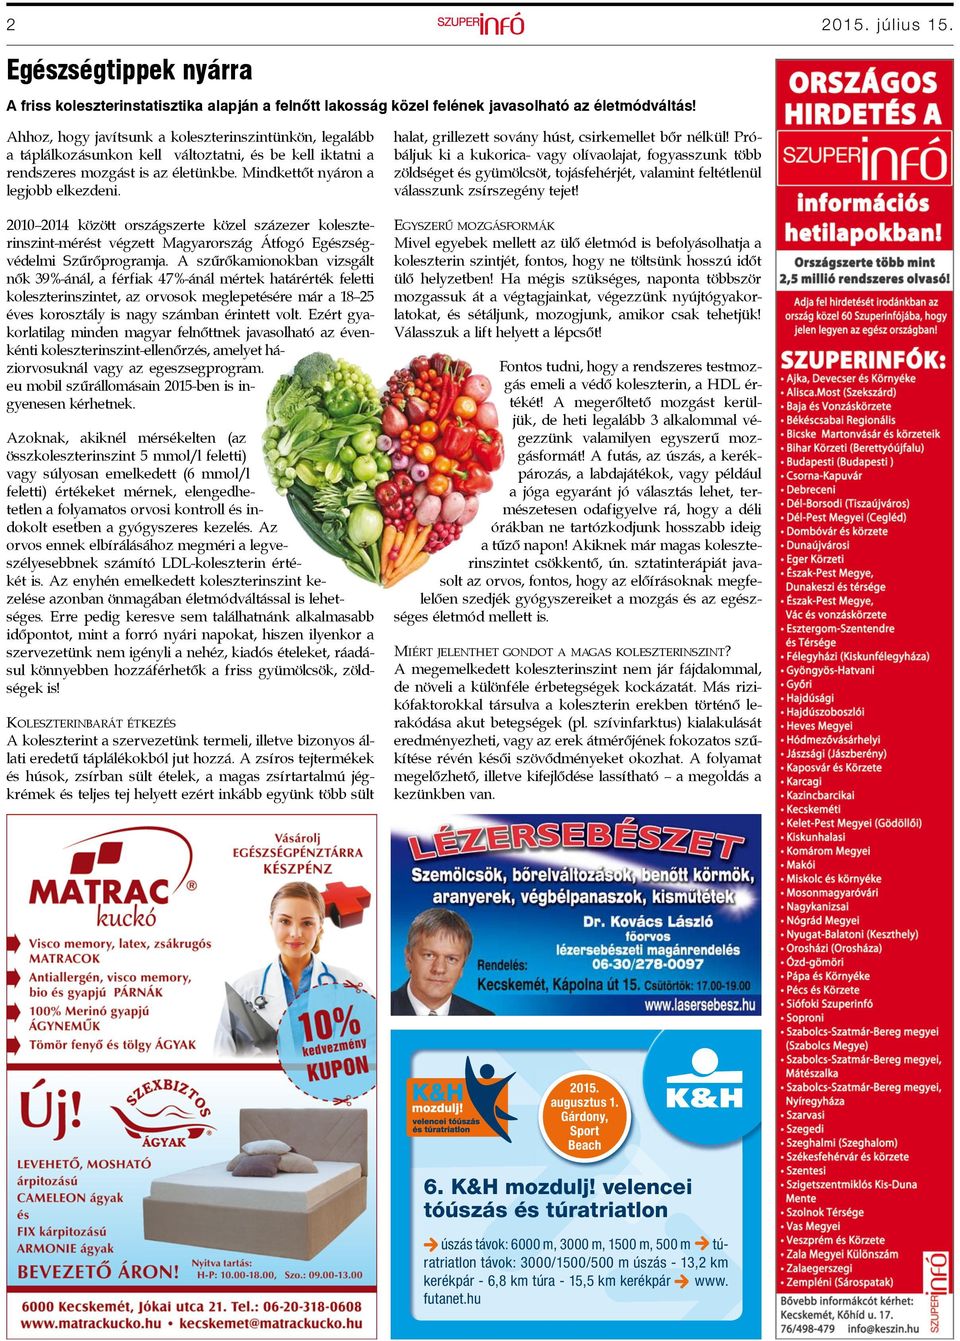 2010 2014 között országszerte közel százezer koleszterinszint-mérést végzett Magyarország Átfogó Egészségvédelmi Szűrőprogramja.